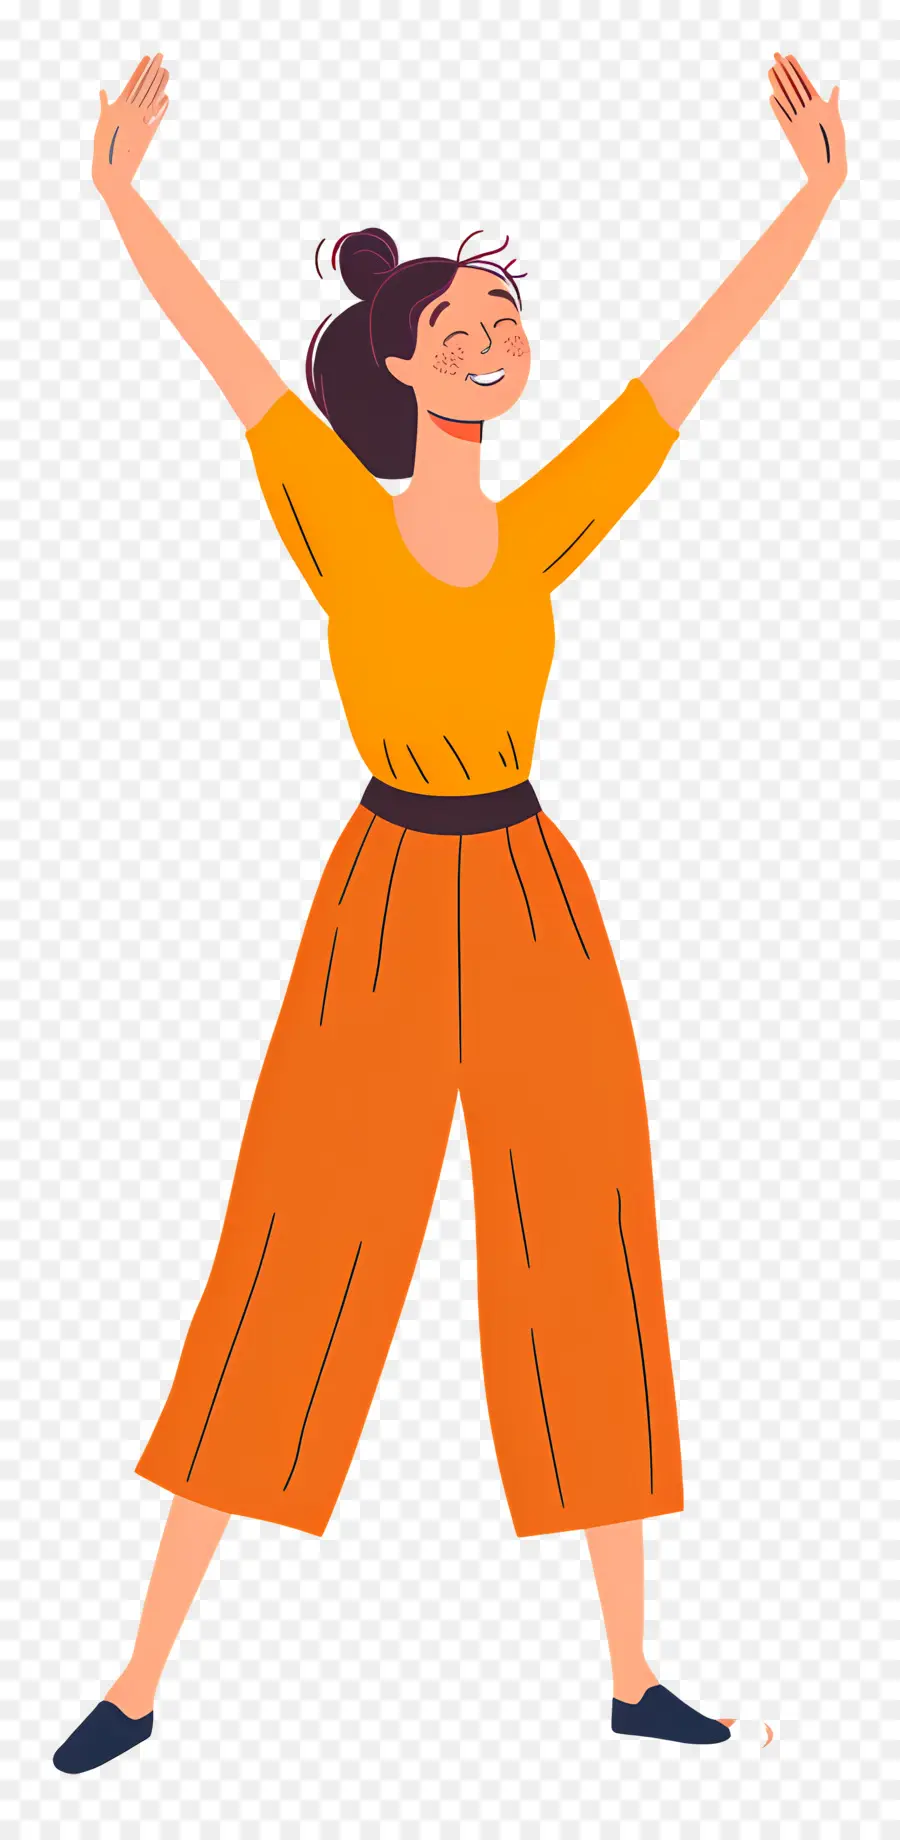 Frau Cartoon Orange Overall Arme erhöhten Beine verschränkt - Cartoonfrau im orangefarbenen Overall mit angehobenen Armen